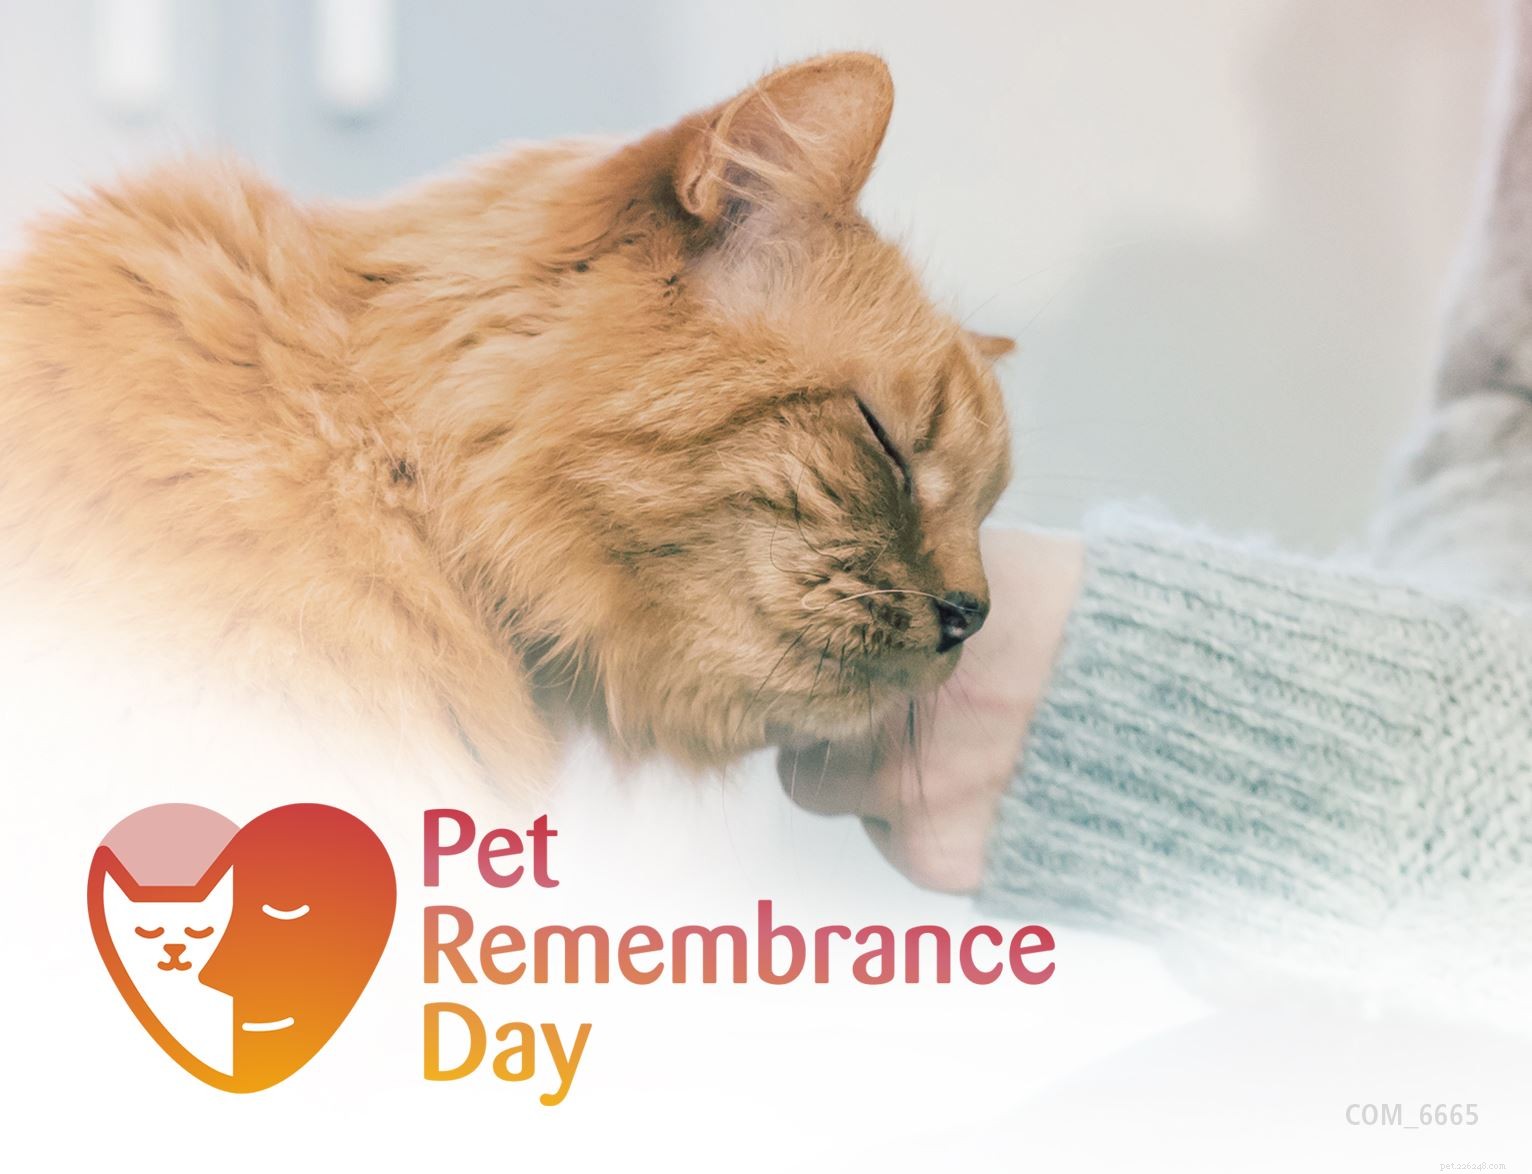 Upptäck speciella minnesidéer för att hedra minnet av din älskade katt denna husdjursminnesdag 